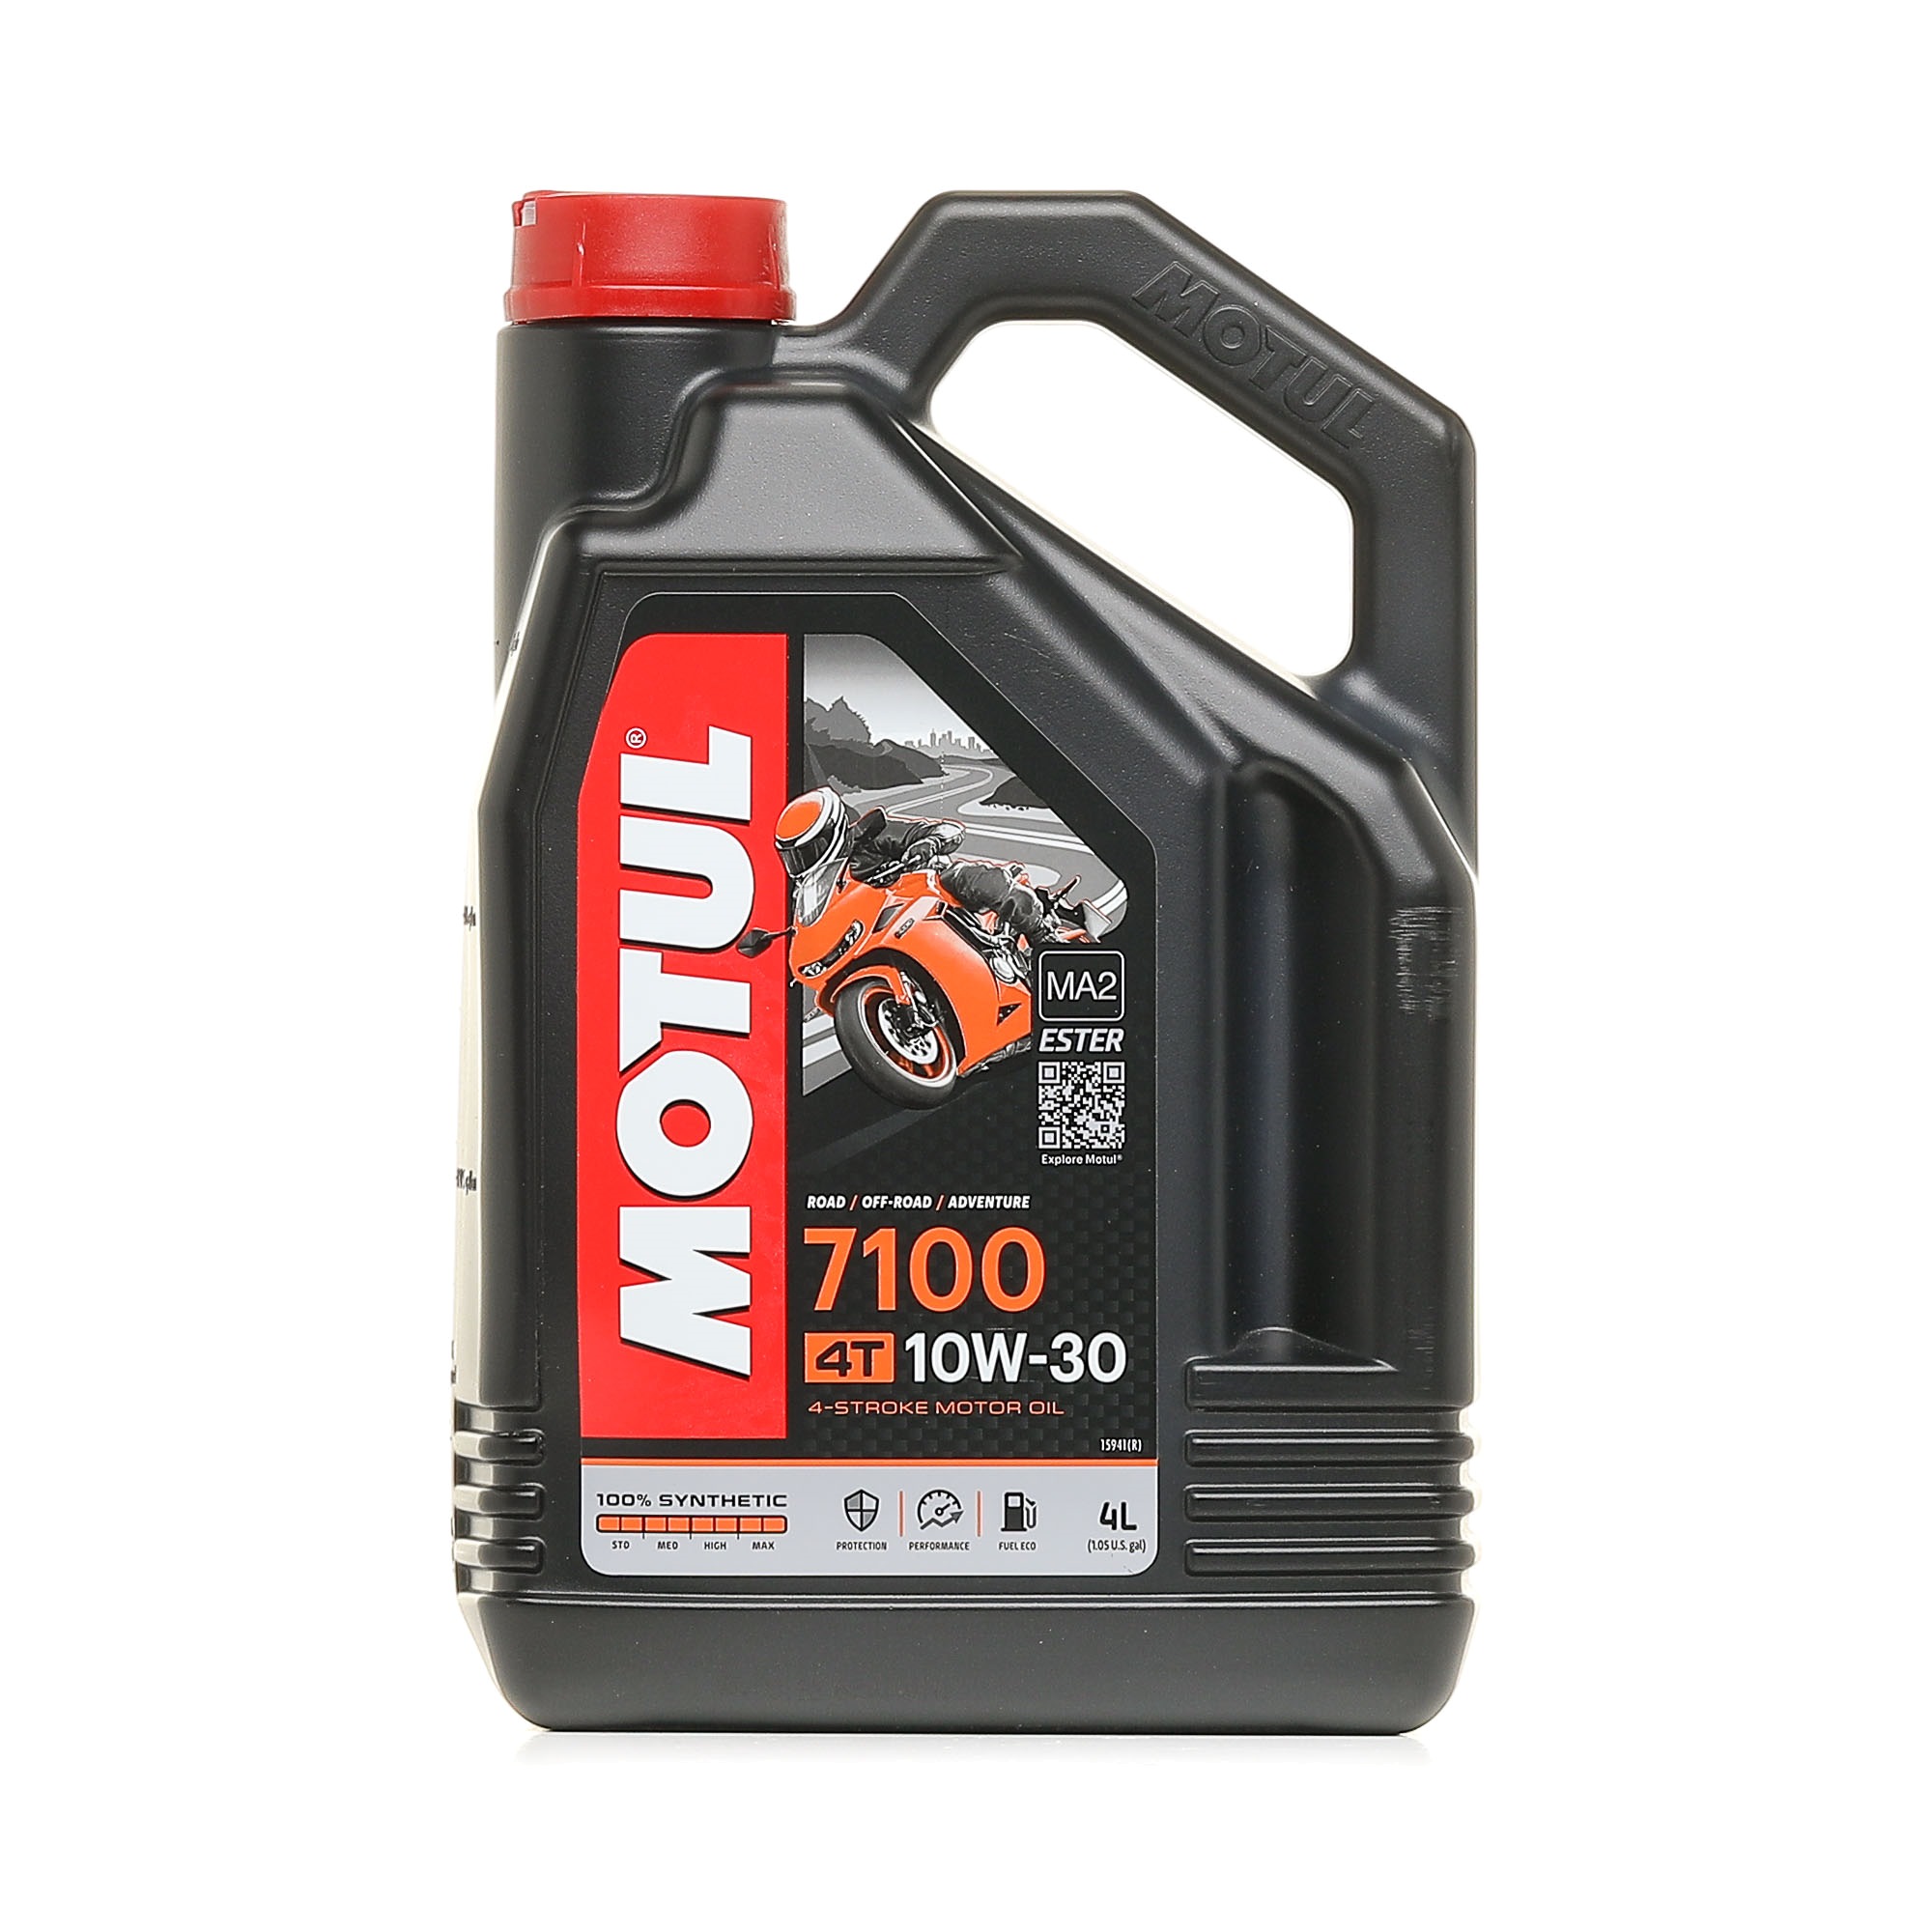 Motor oil API SG MOTUL - 104090 4T